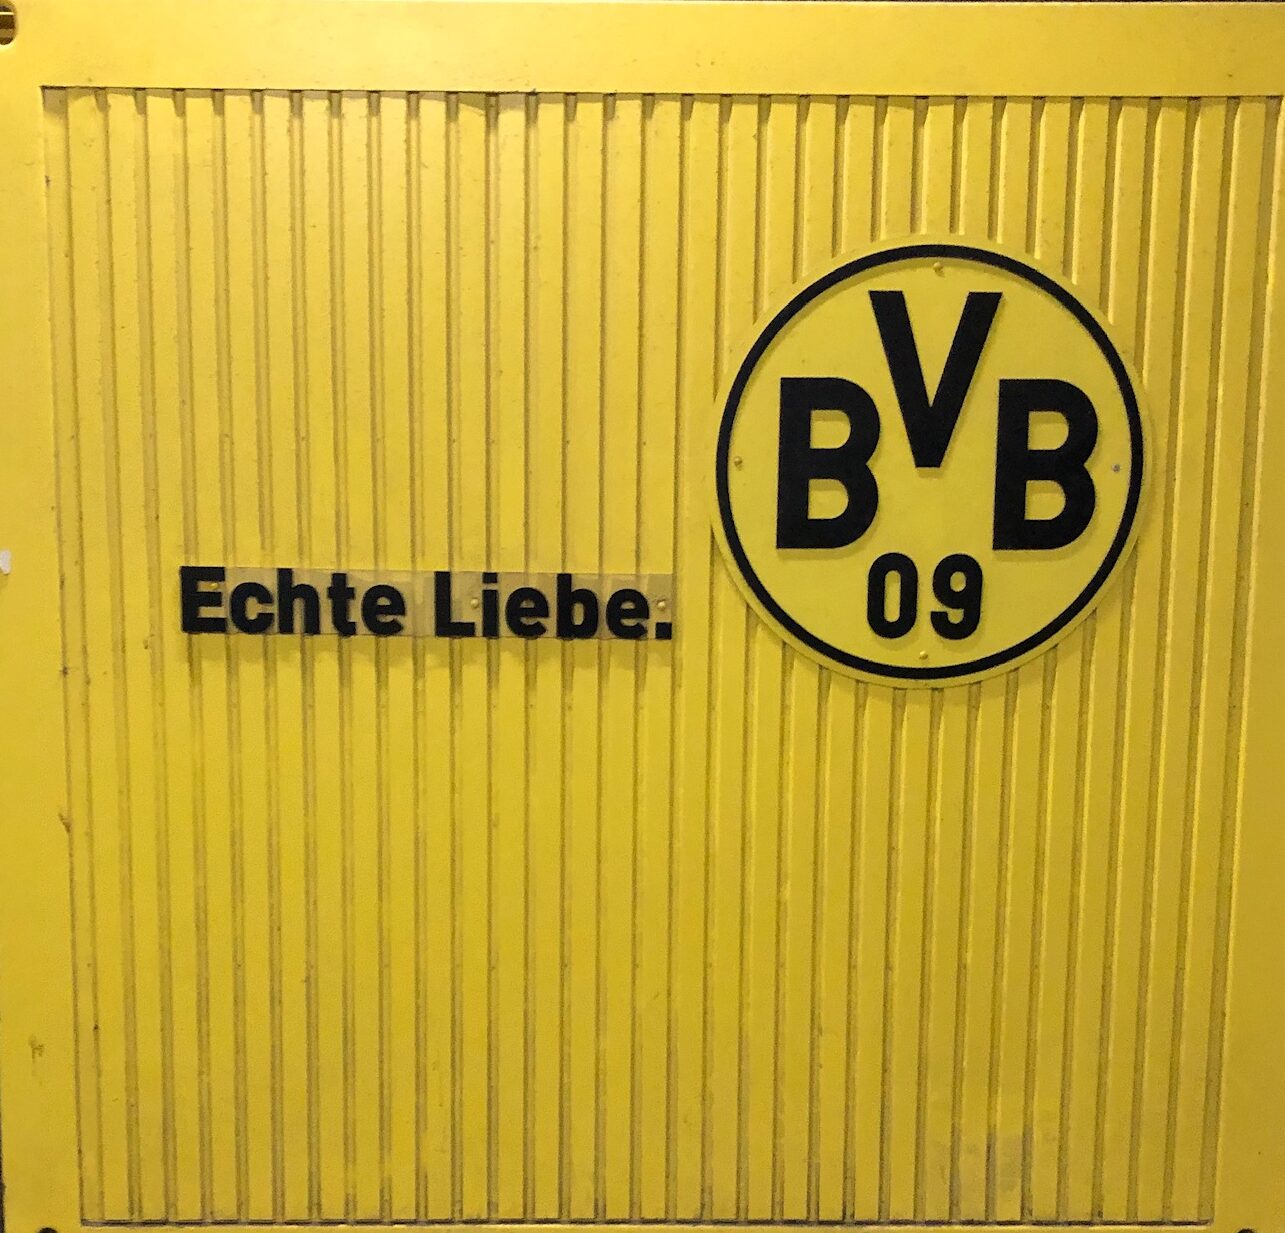 BVB, Borussia Dortmund